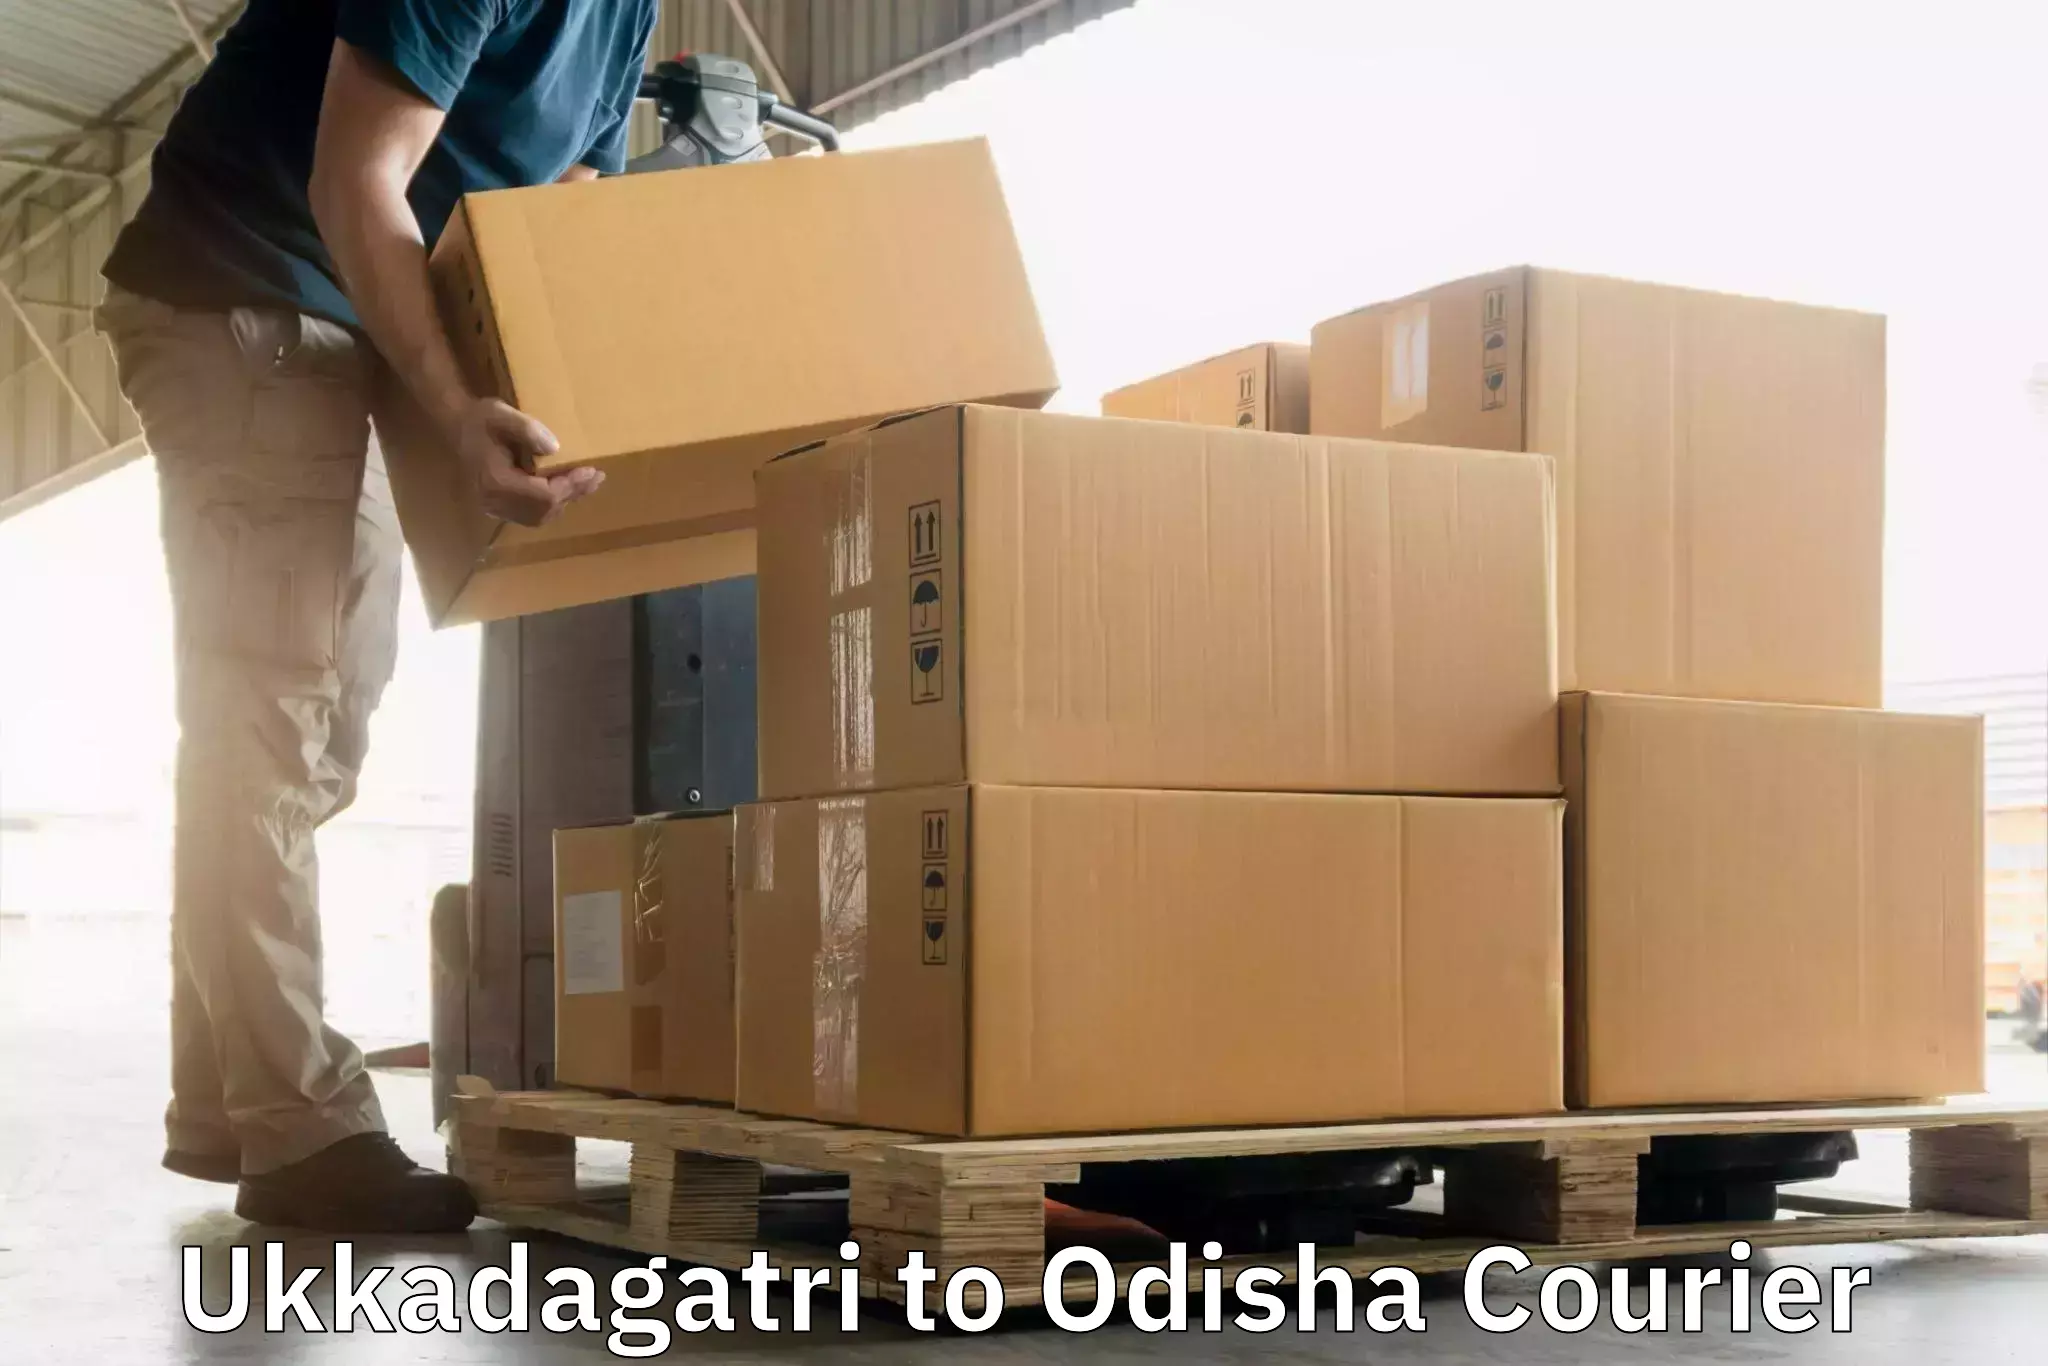 24/7 courier service Ukkadagatri to Odisha